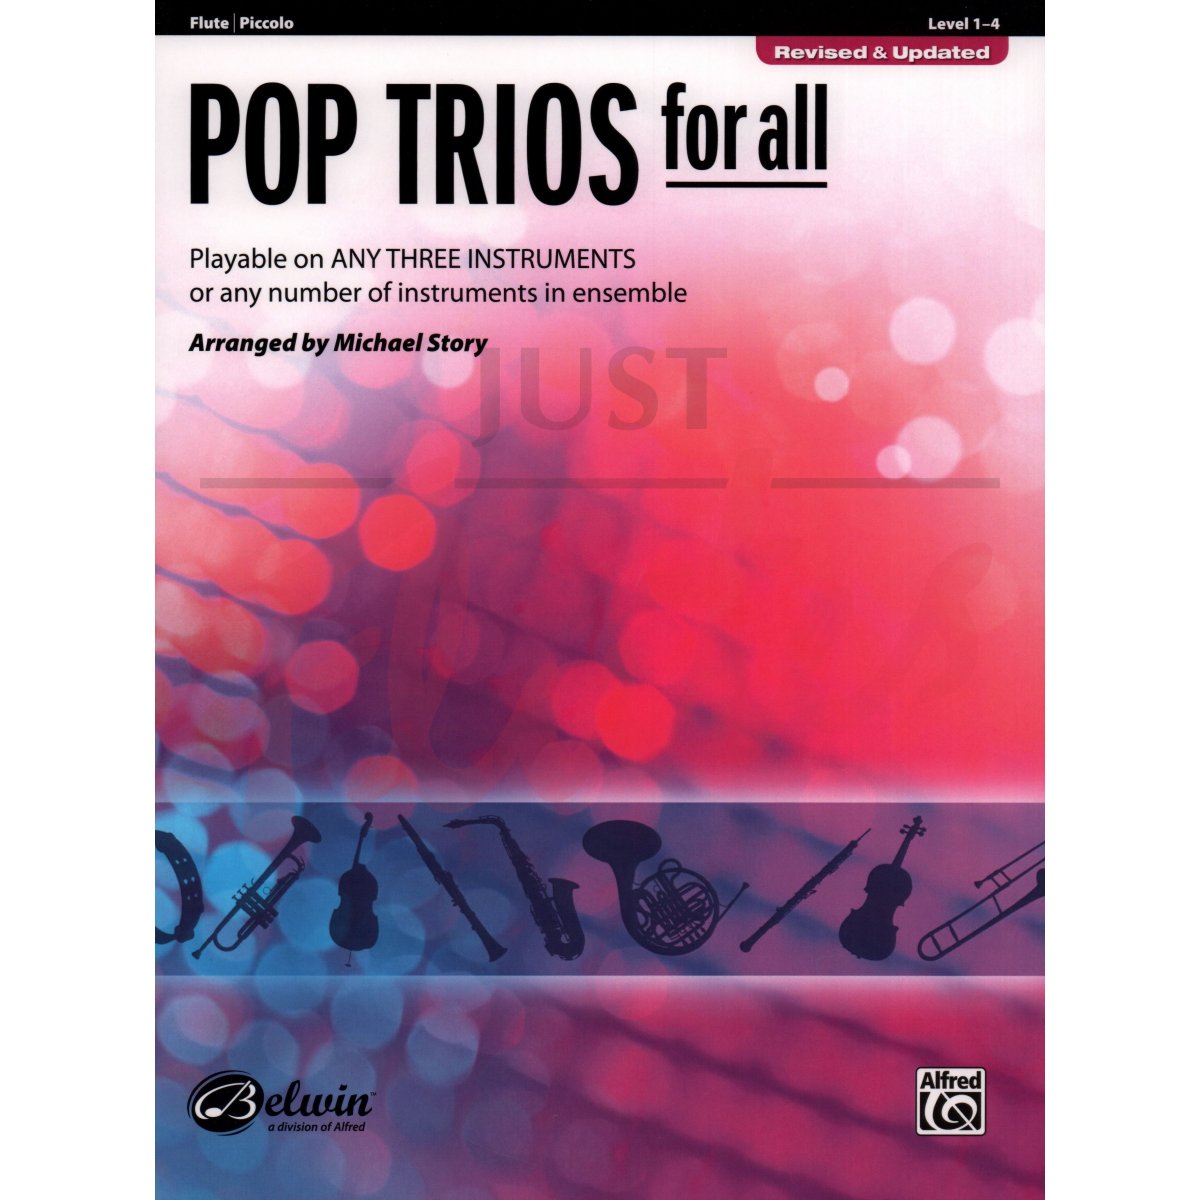 Pop Trios for All [Flute/Piccolo]